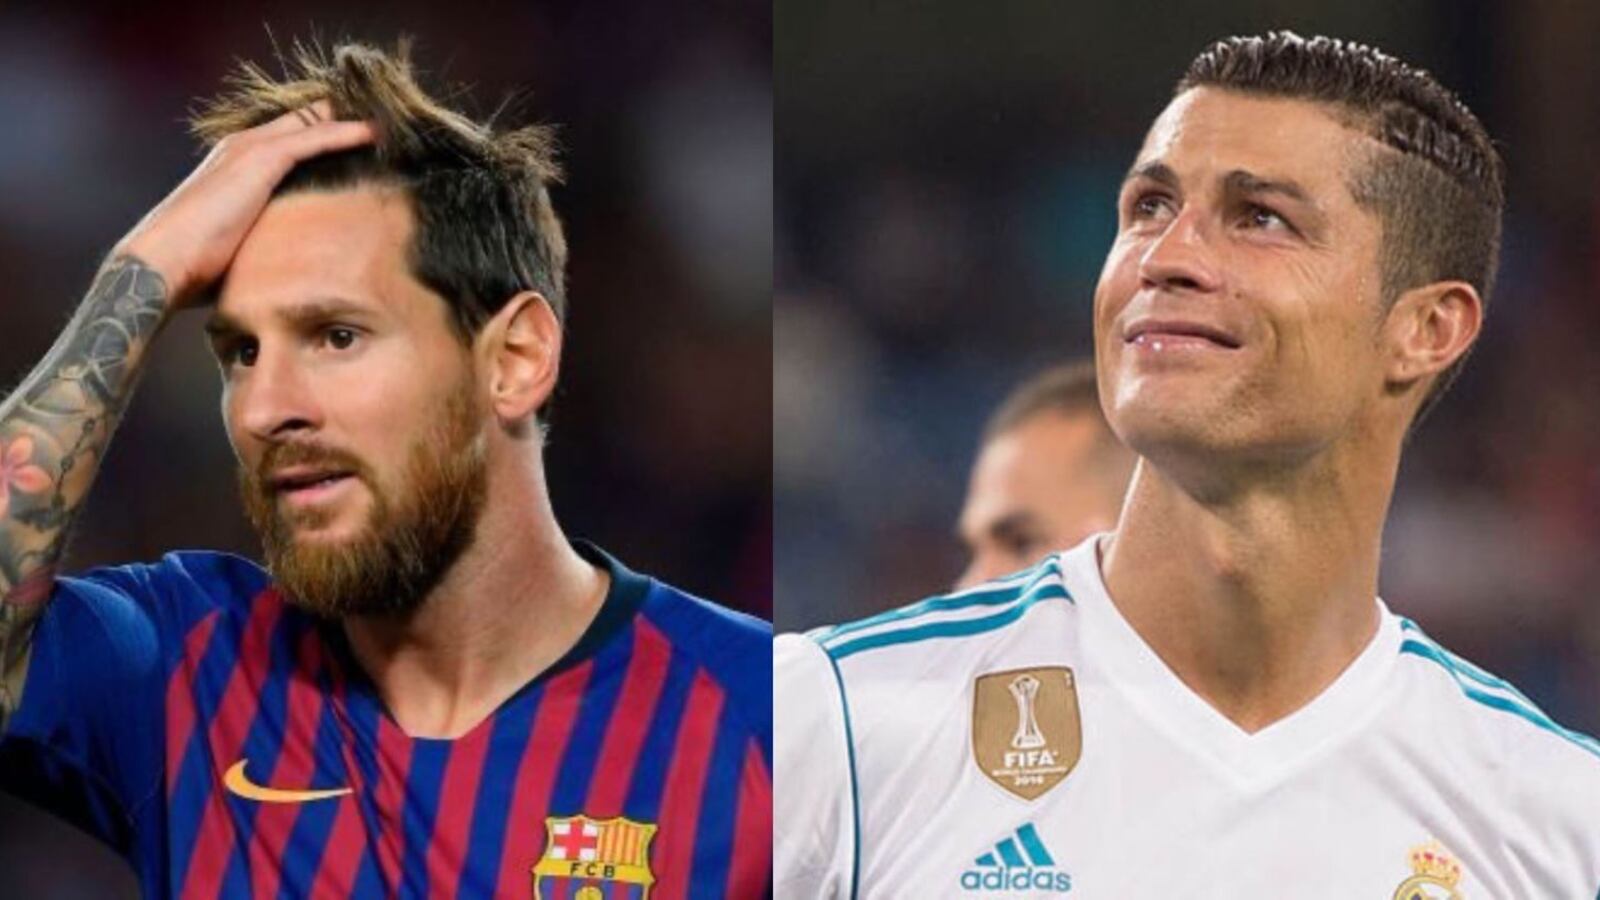 Acusa a Cristiano Ronaldo y Messi de ladrones, las duras palabras de un futbolista